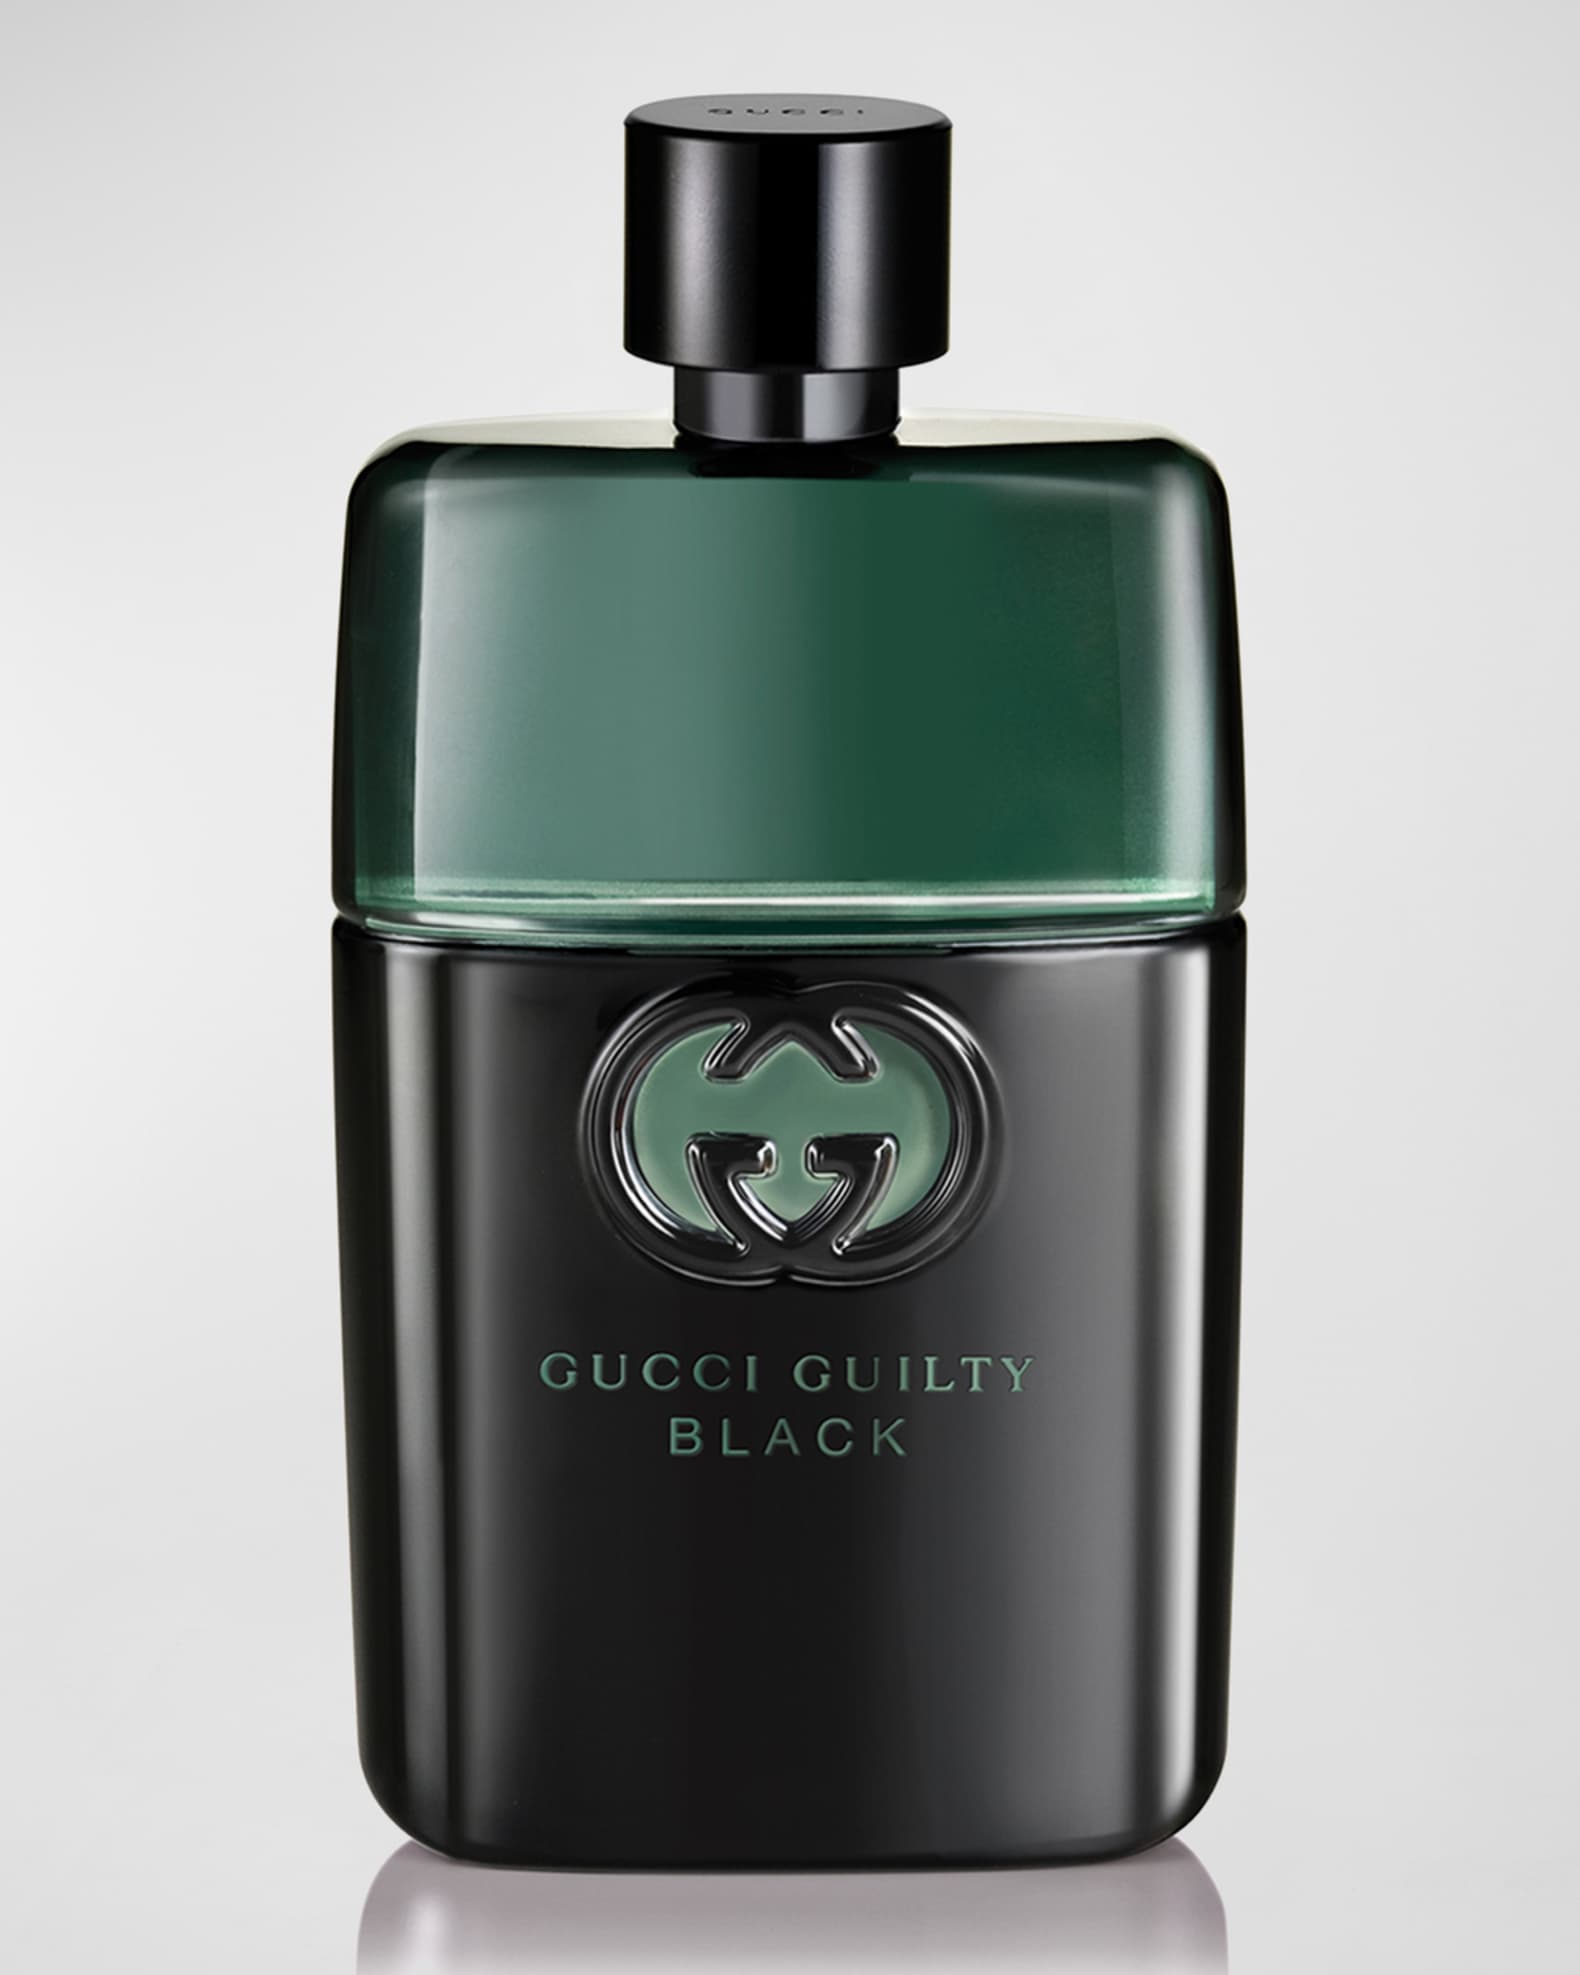 Shop Gucci Gucci Guilty Elixir De Parfum For Women